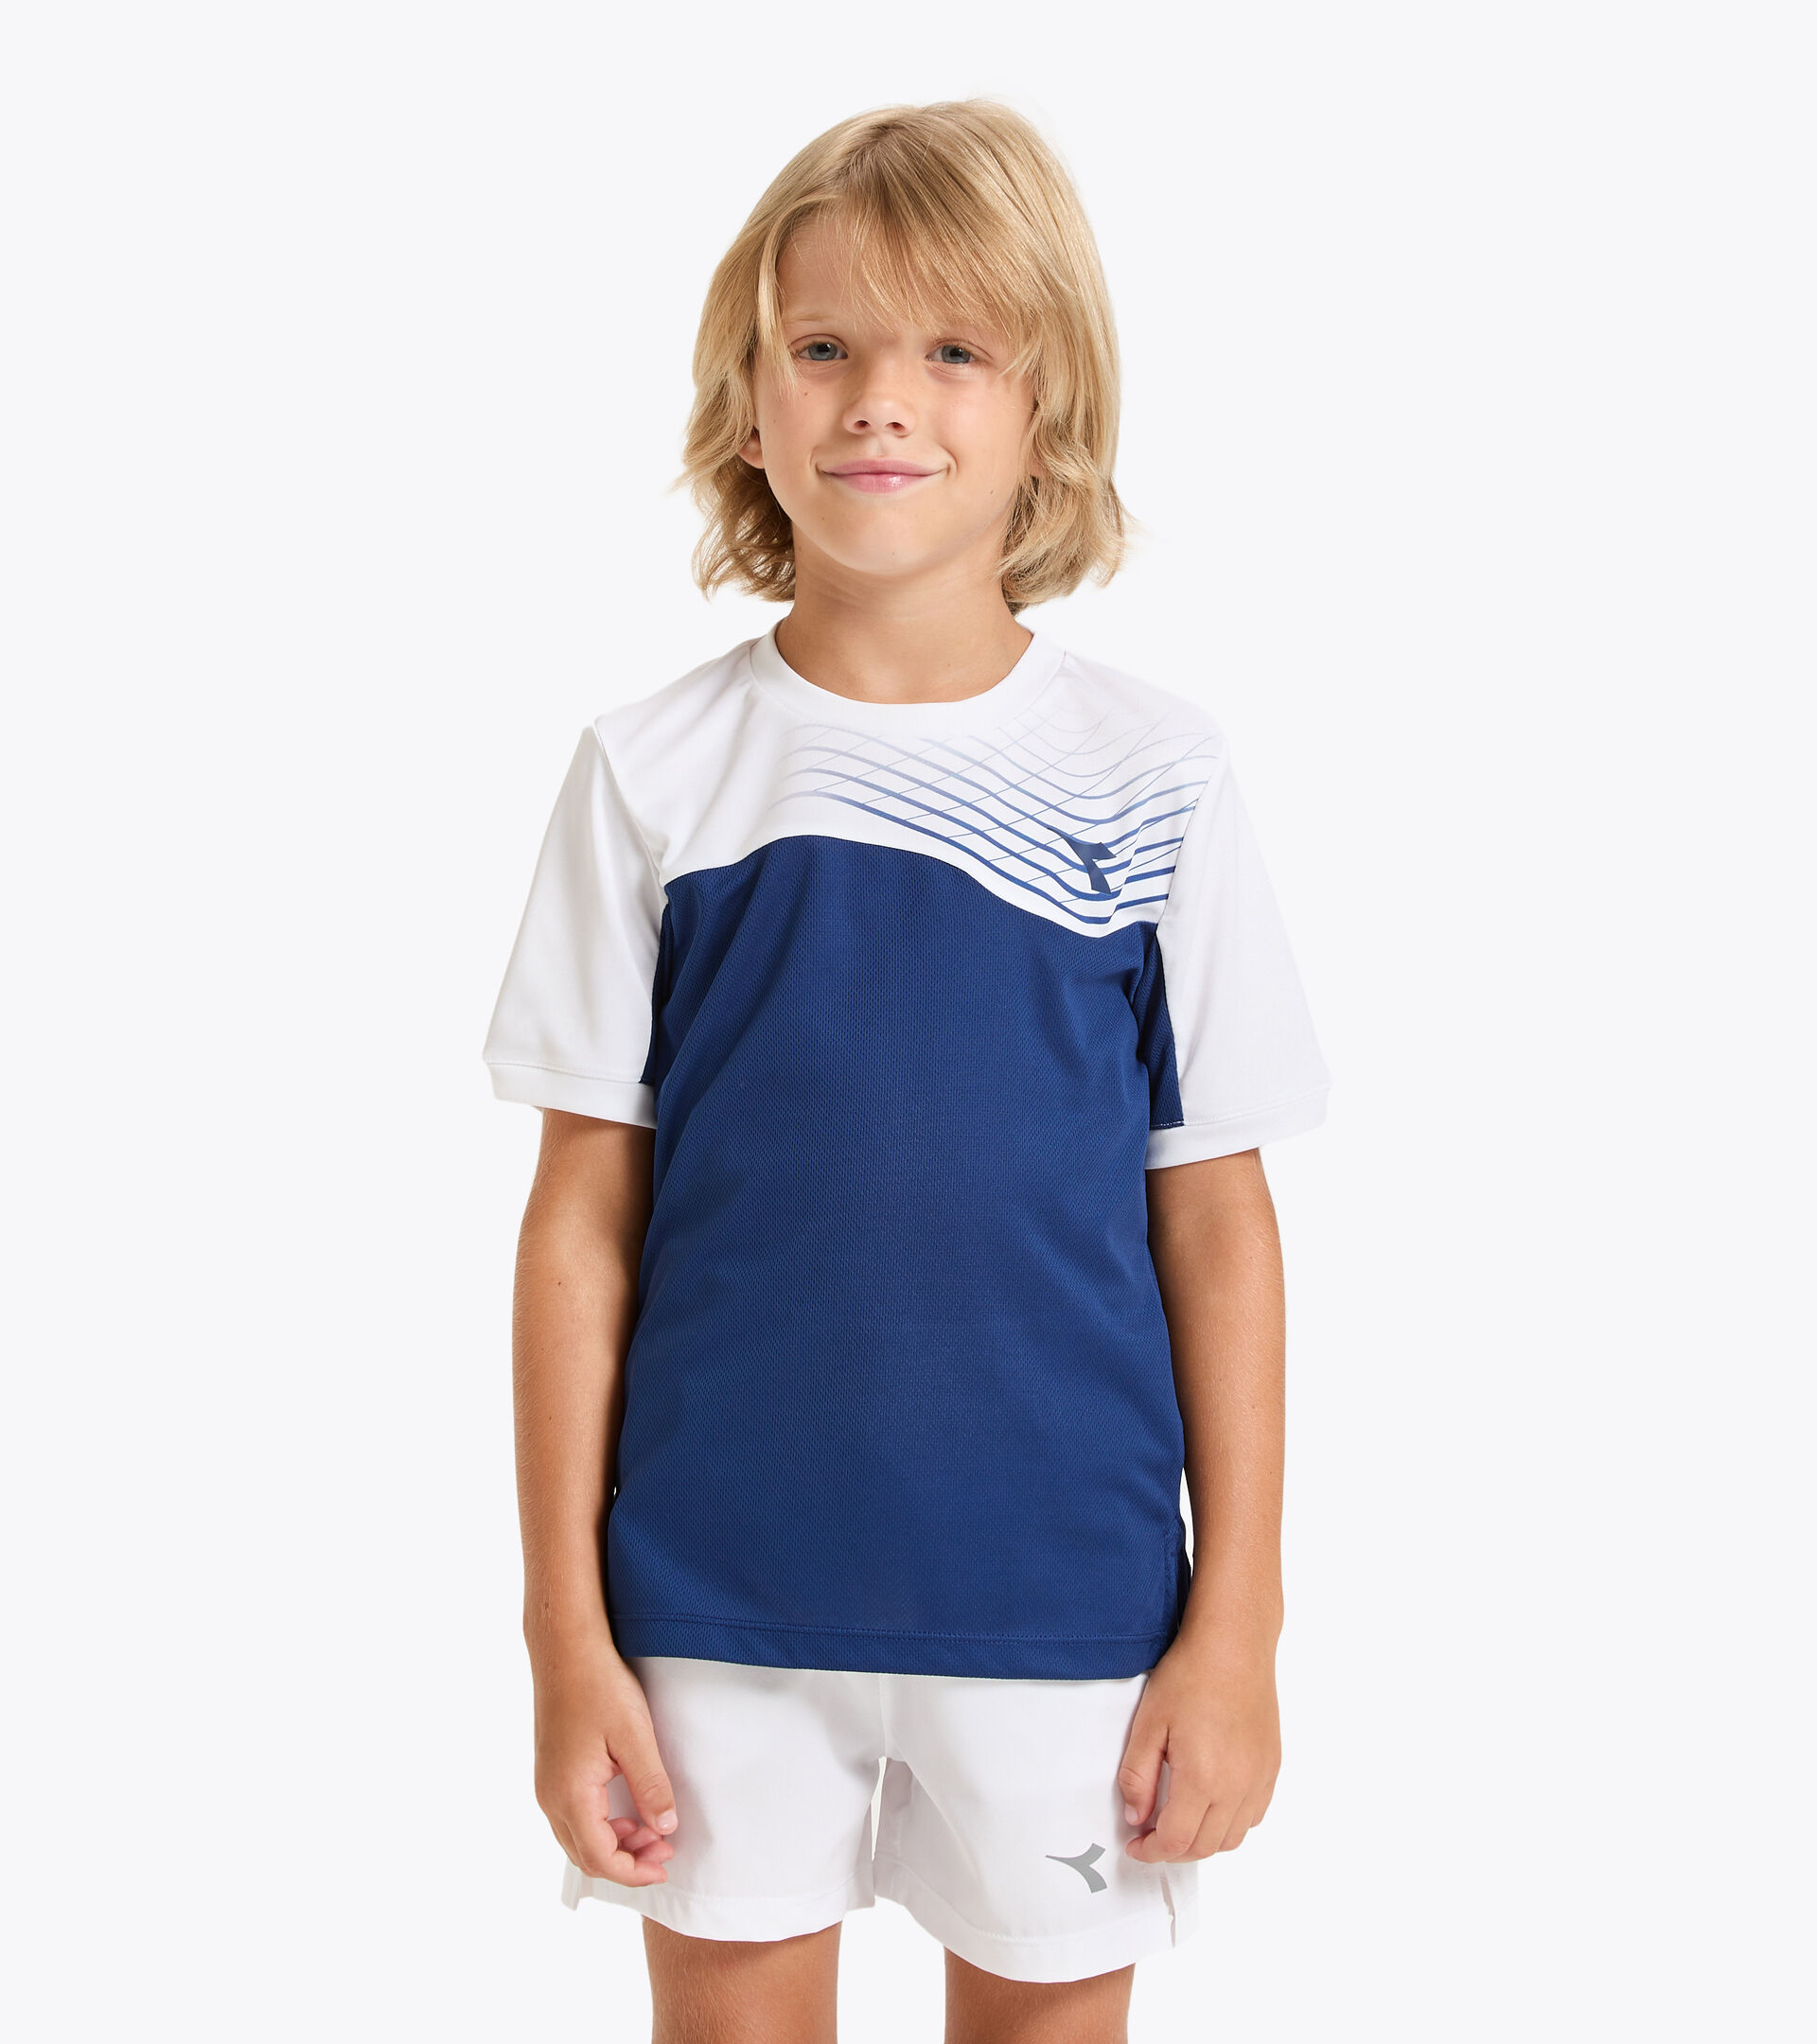 Camiseta de tenis - Junior J. T-SHIRT COURT AZUL FINCA - Diadora